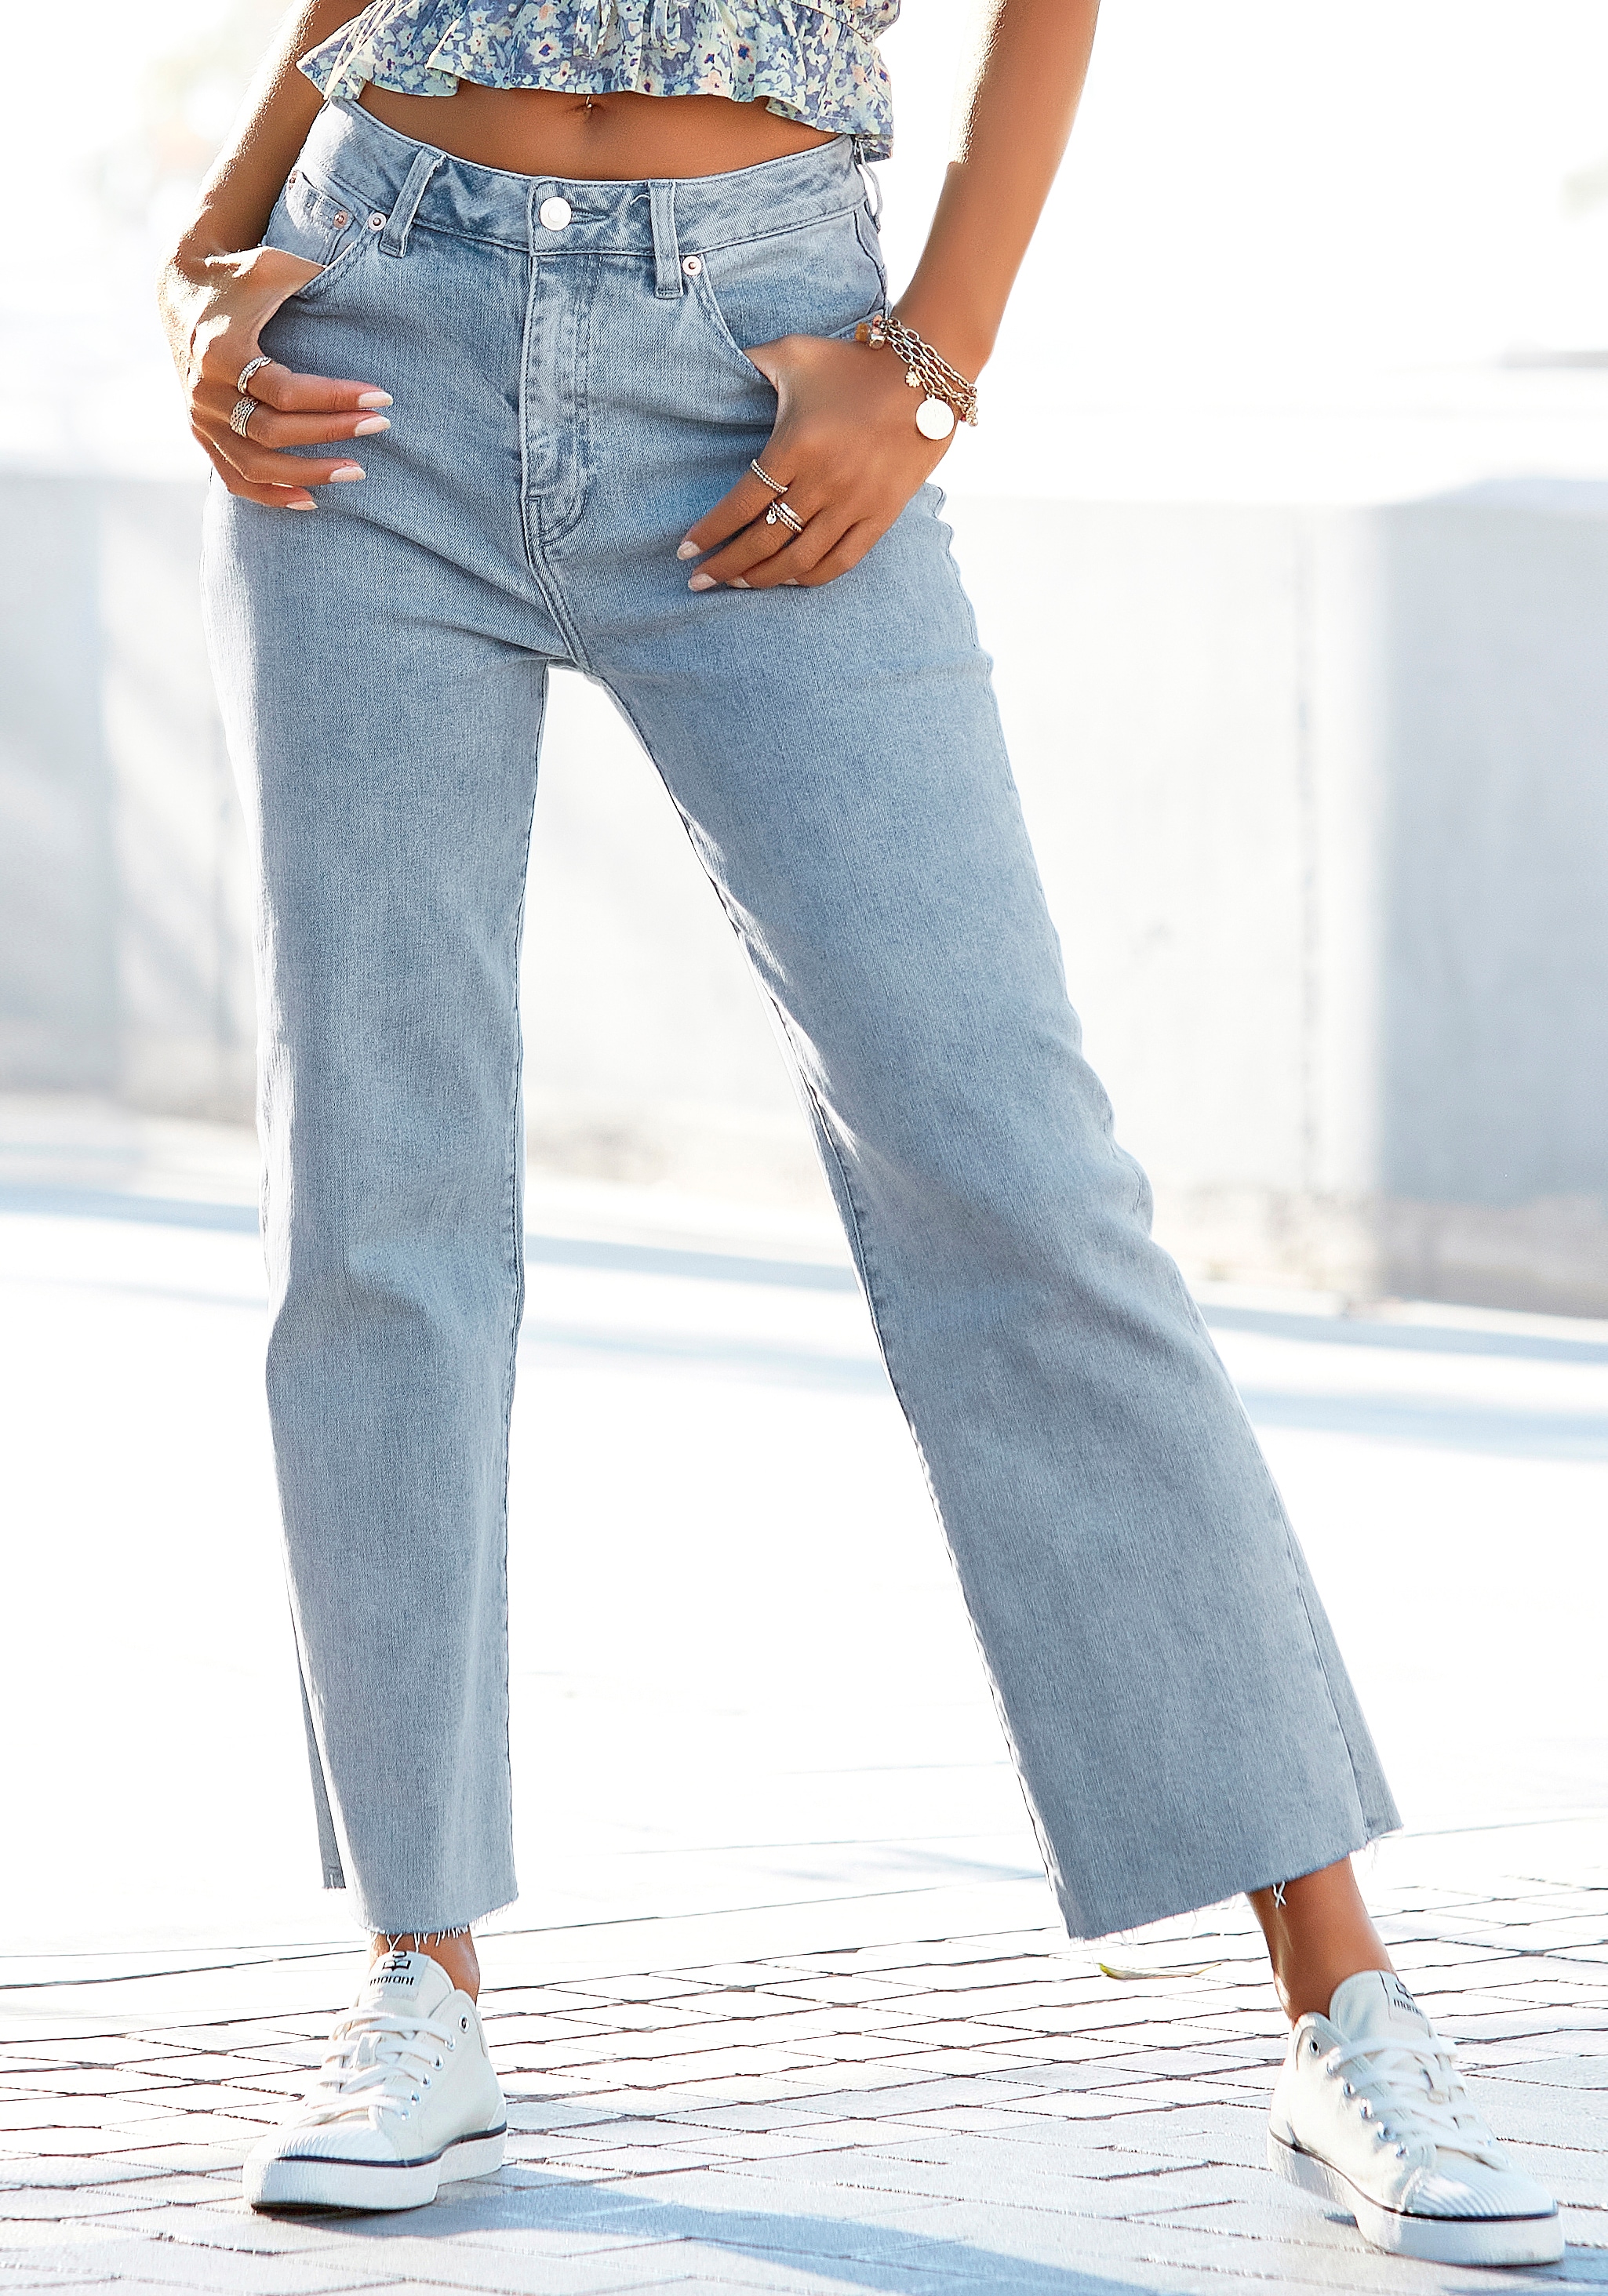 ♕ Damen Gratis Jeans online mit shoppen weit Versand